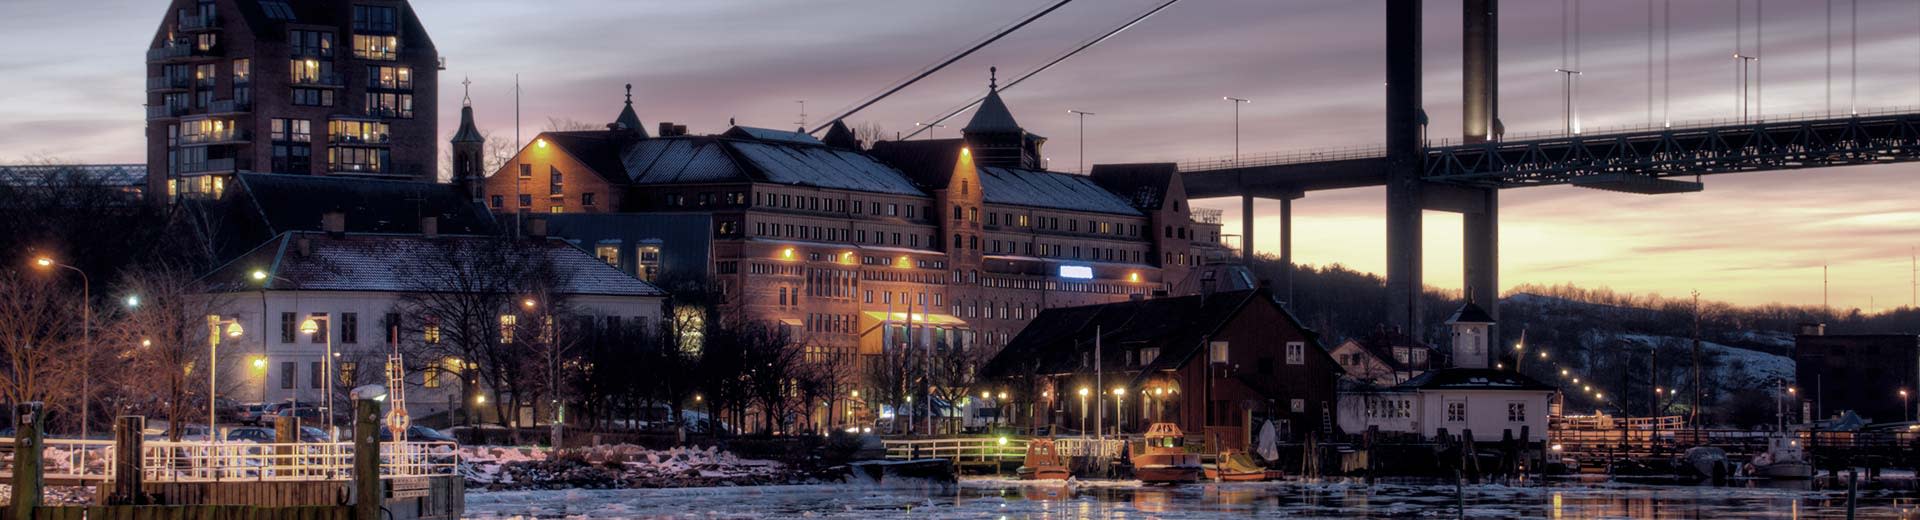 Historische Gebäude entlang der Ufer von Göteborg nachts.